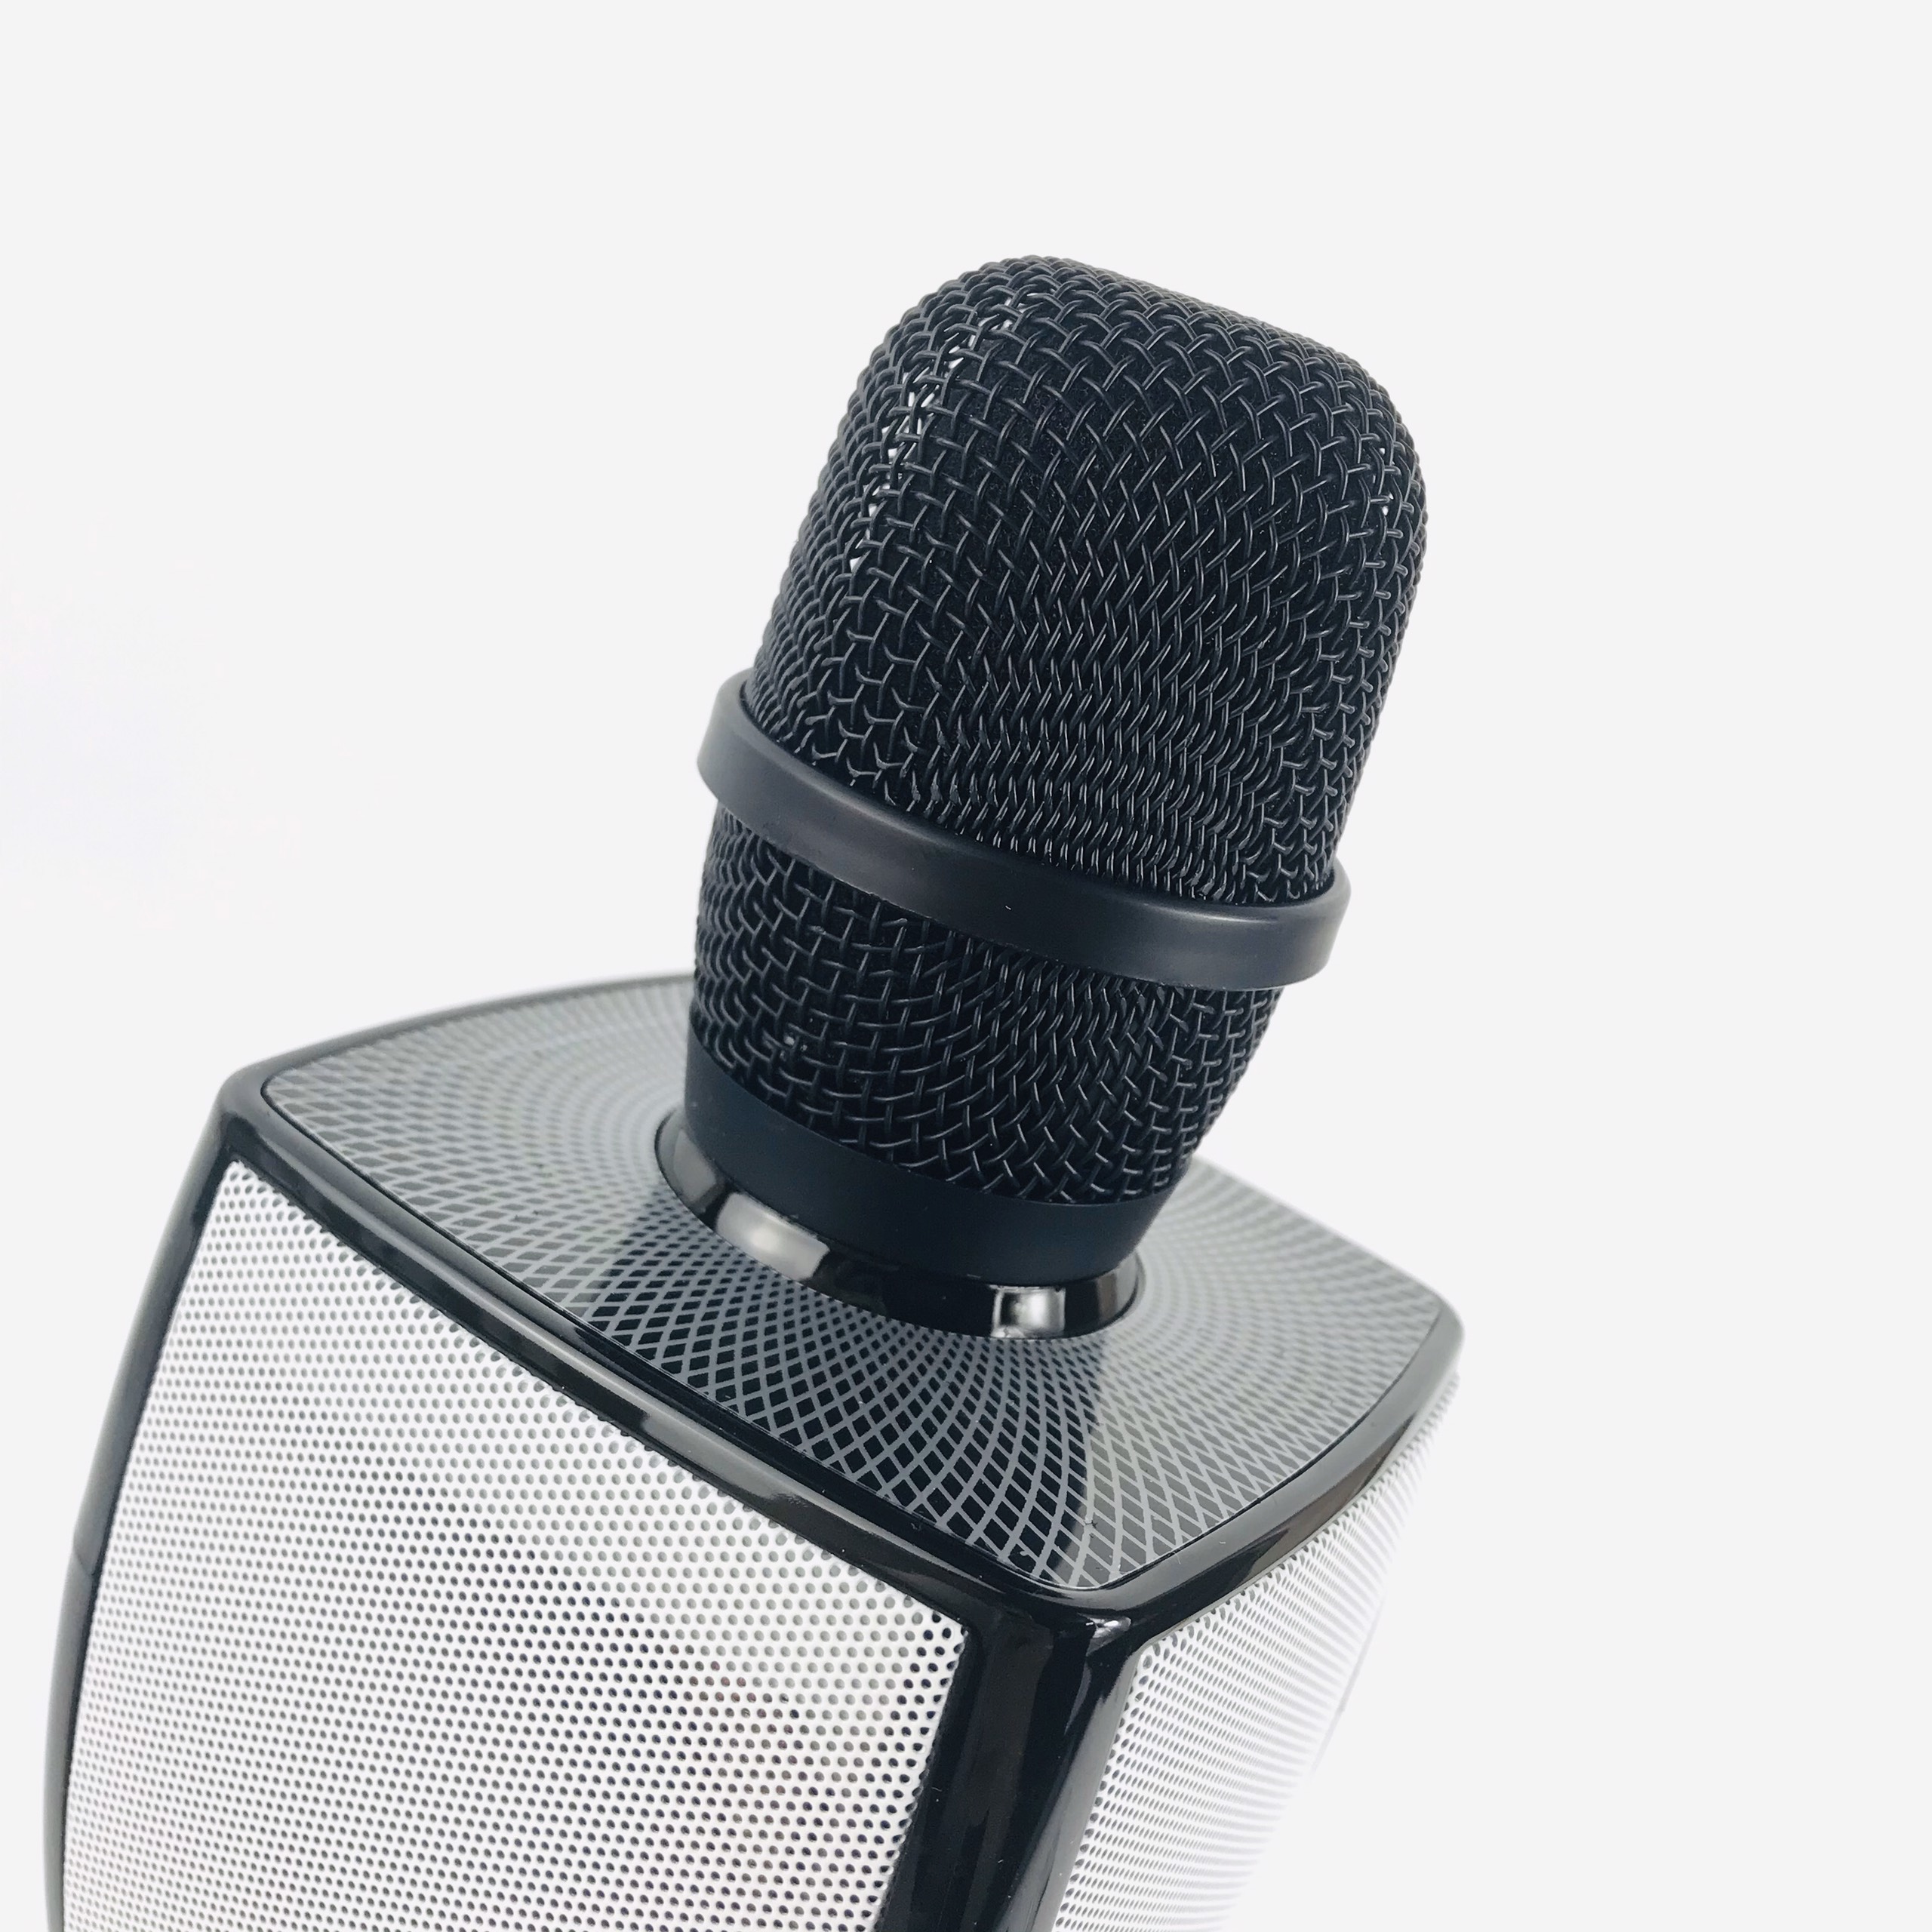 Micro Karaoke Bluetooth Kèm loa Bass GUTEK YS91 Âm Thanh Chất Lượng, Âm Bass Cực Ấm, Mic Bắt Giọng Cực Tốt, Hỗ Trợ Kết Nối USB, Thẻ Nhớ, Cổng 3.5, Nhiều Màu Sắc - Hàng chính hãng